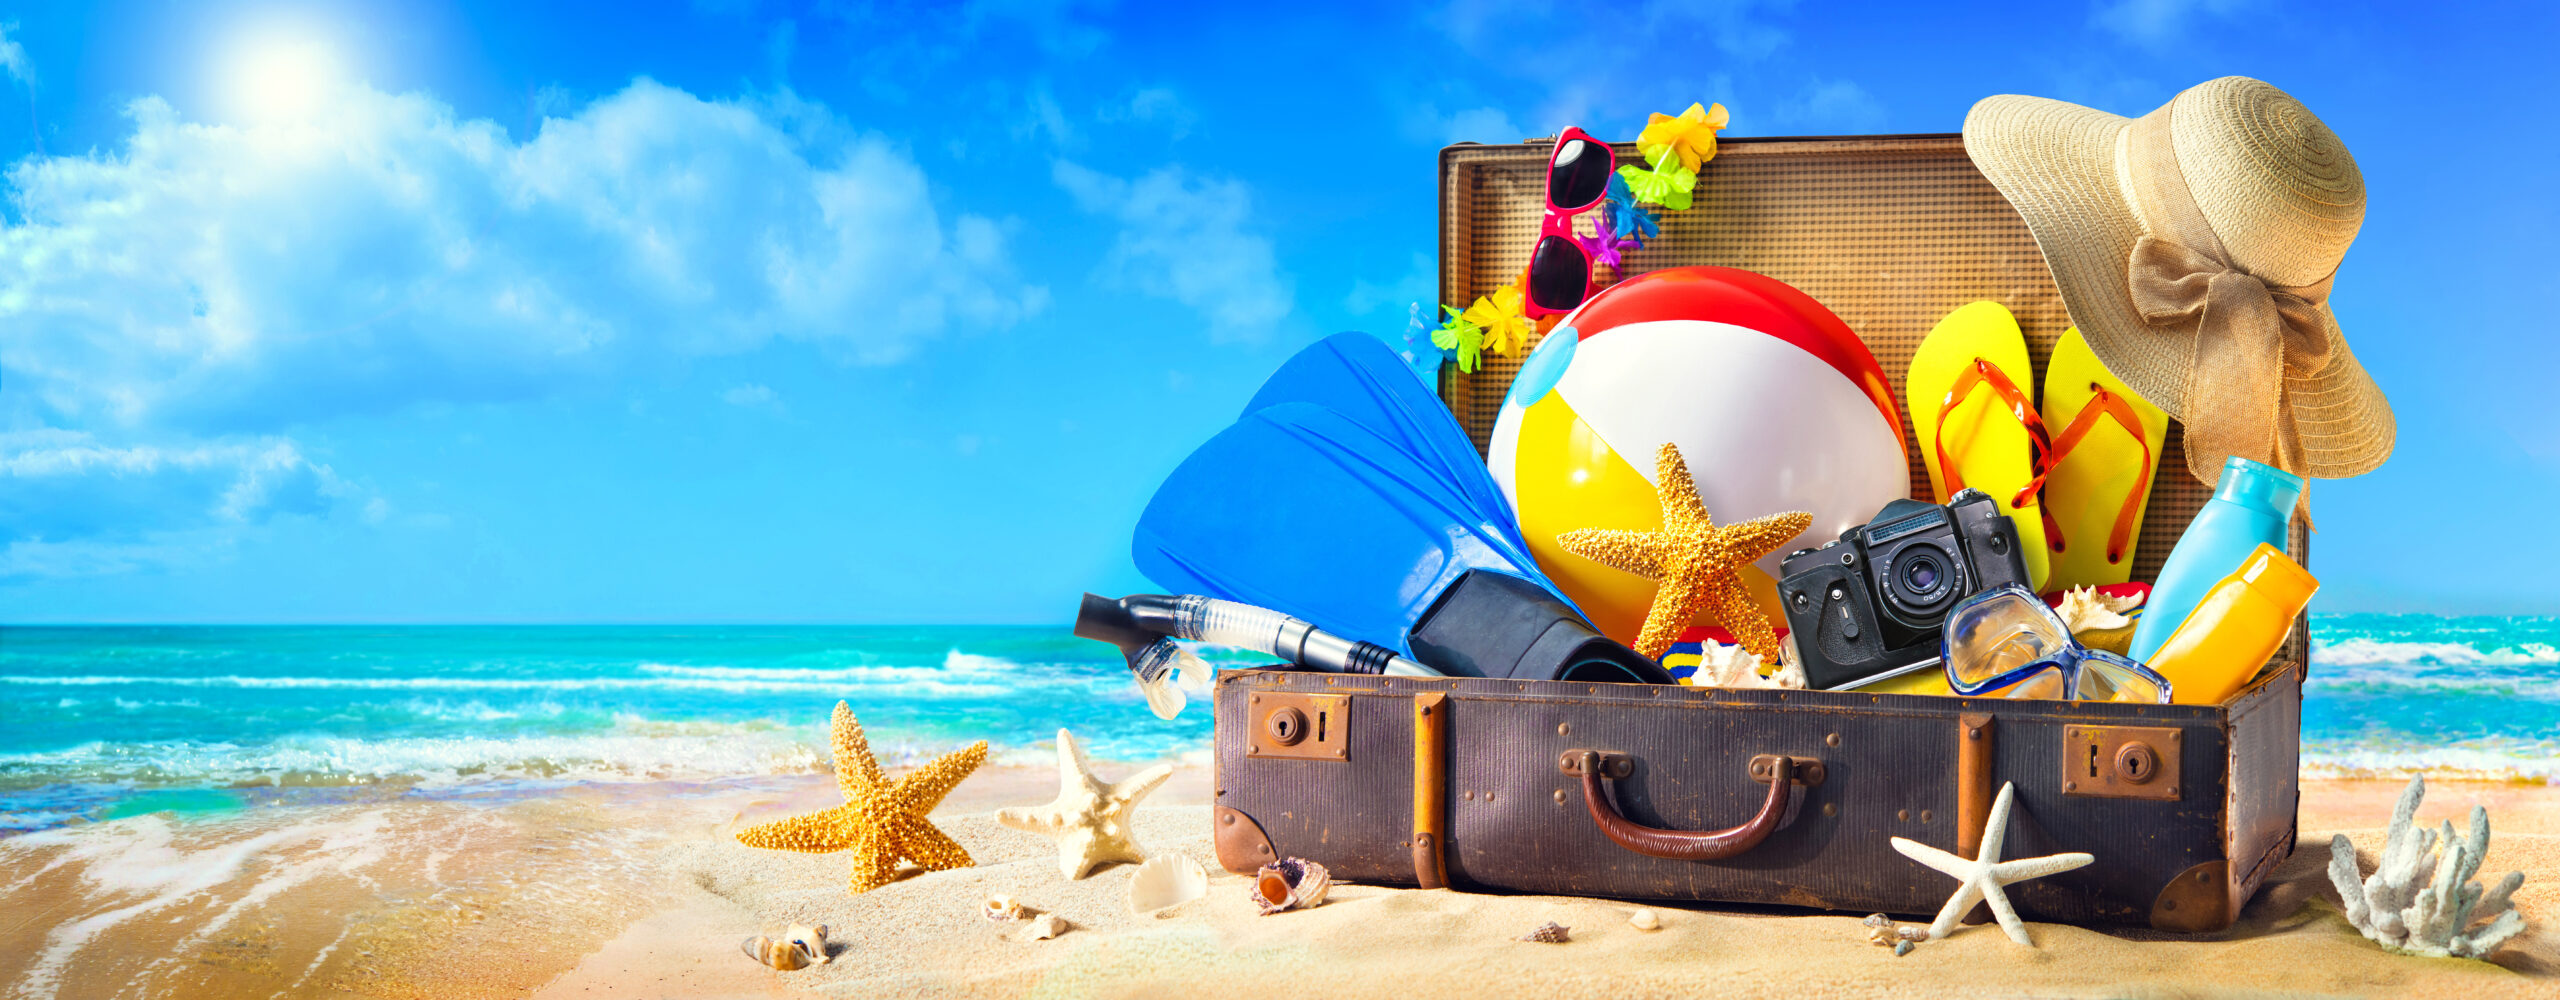 Günstige Reisen mit Hotel und Flug: Entdecken Sie preiswerte Urlaubsangebote